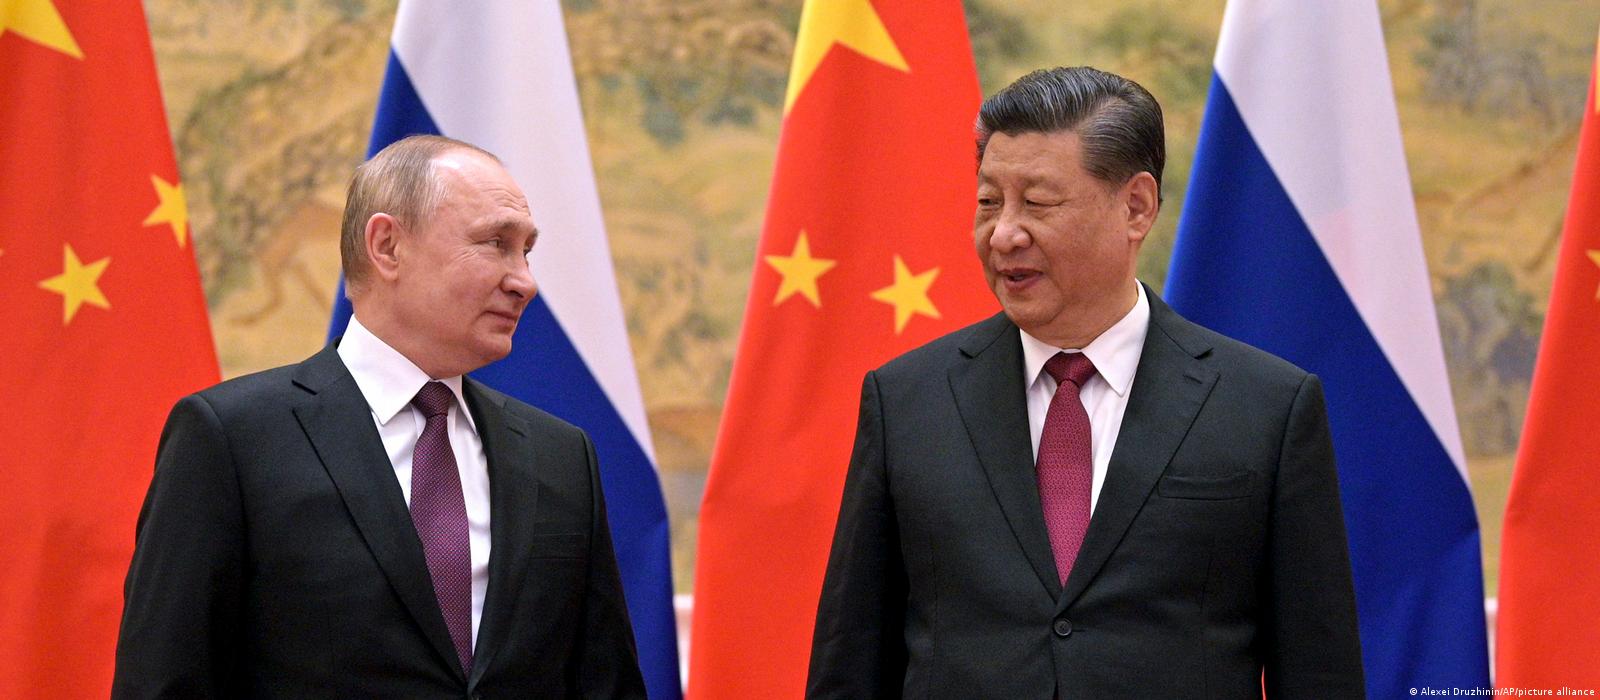 Xi Jinping en Russie : La Chine est « prête à se tenir fermement aux côtés de la Russie » en faveur d’un « véritable multilatéralisme » et d’une « multipolarité dans le monde »